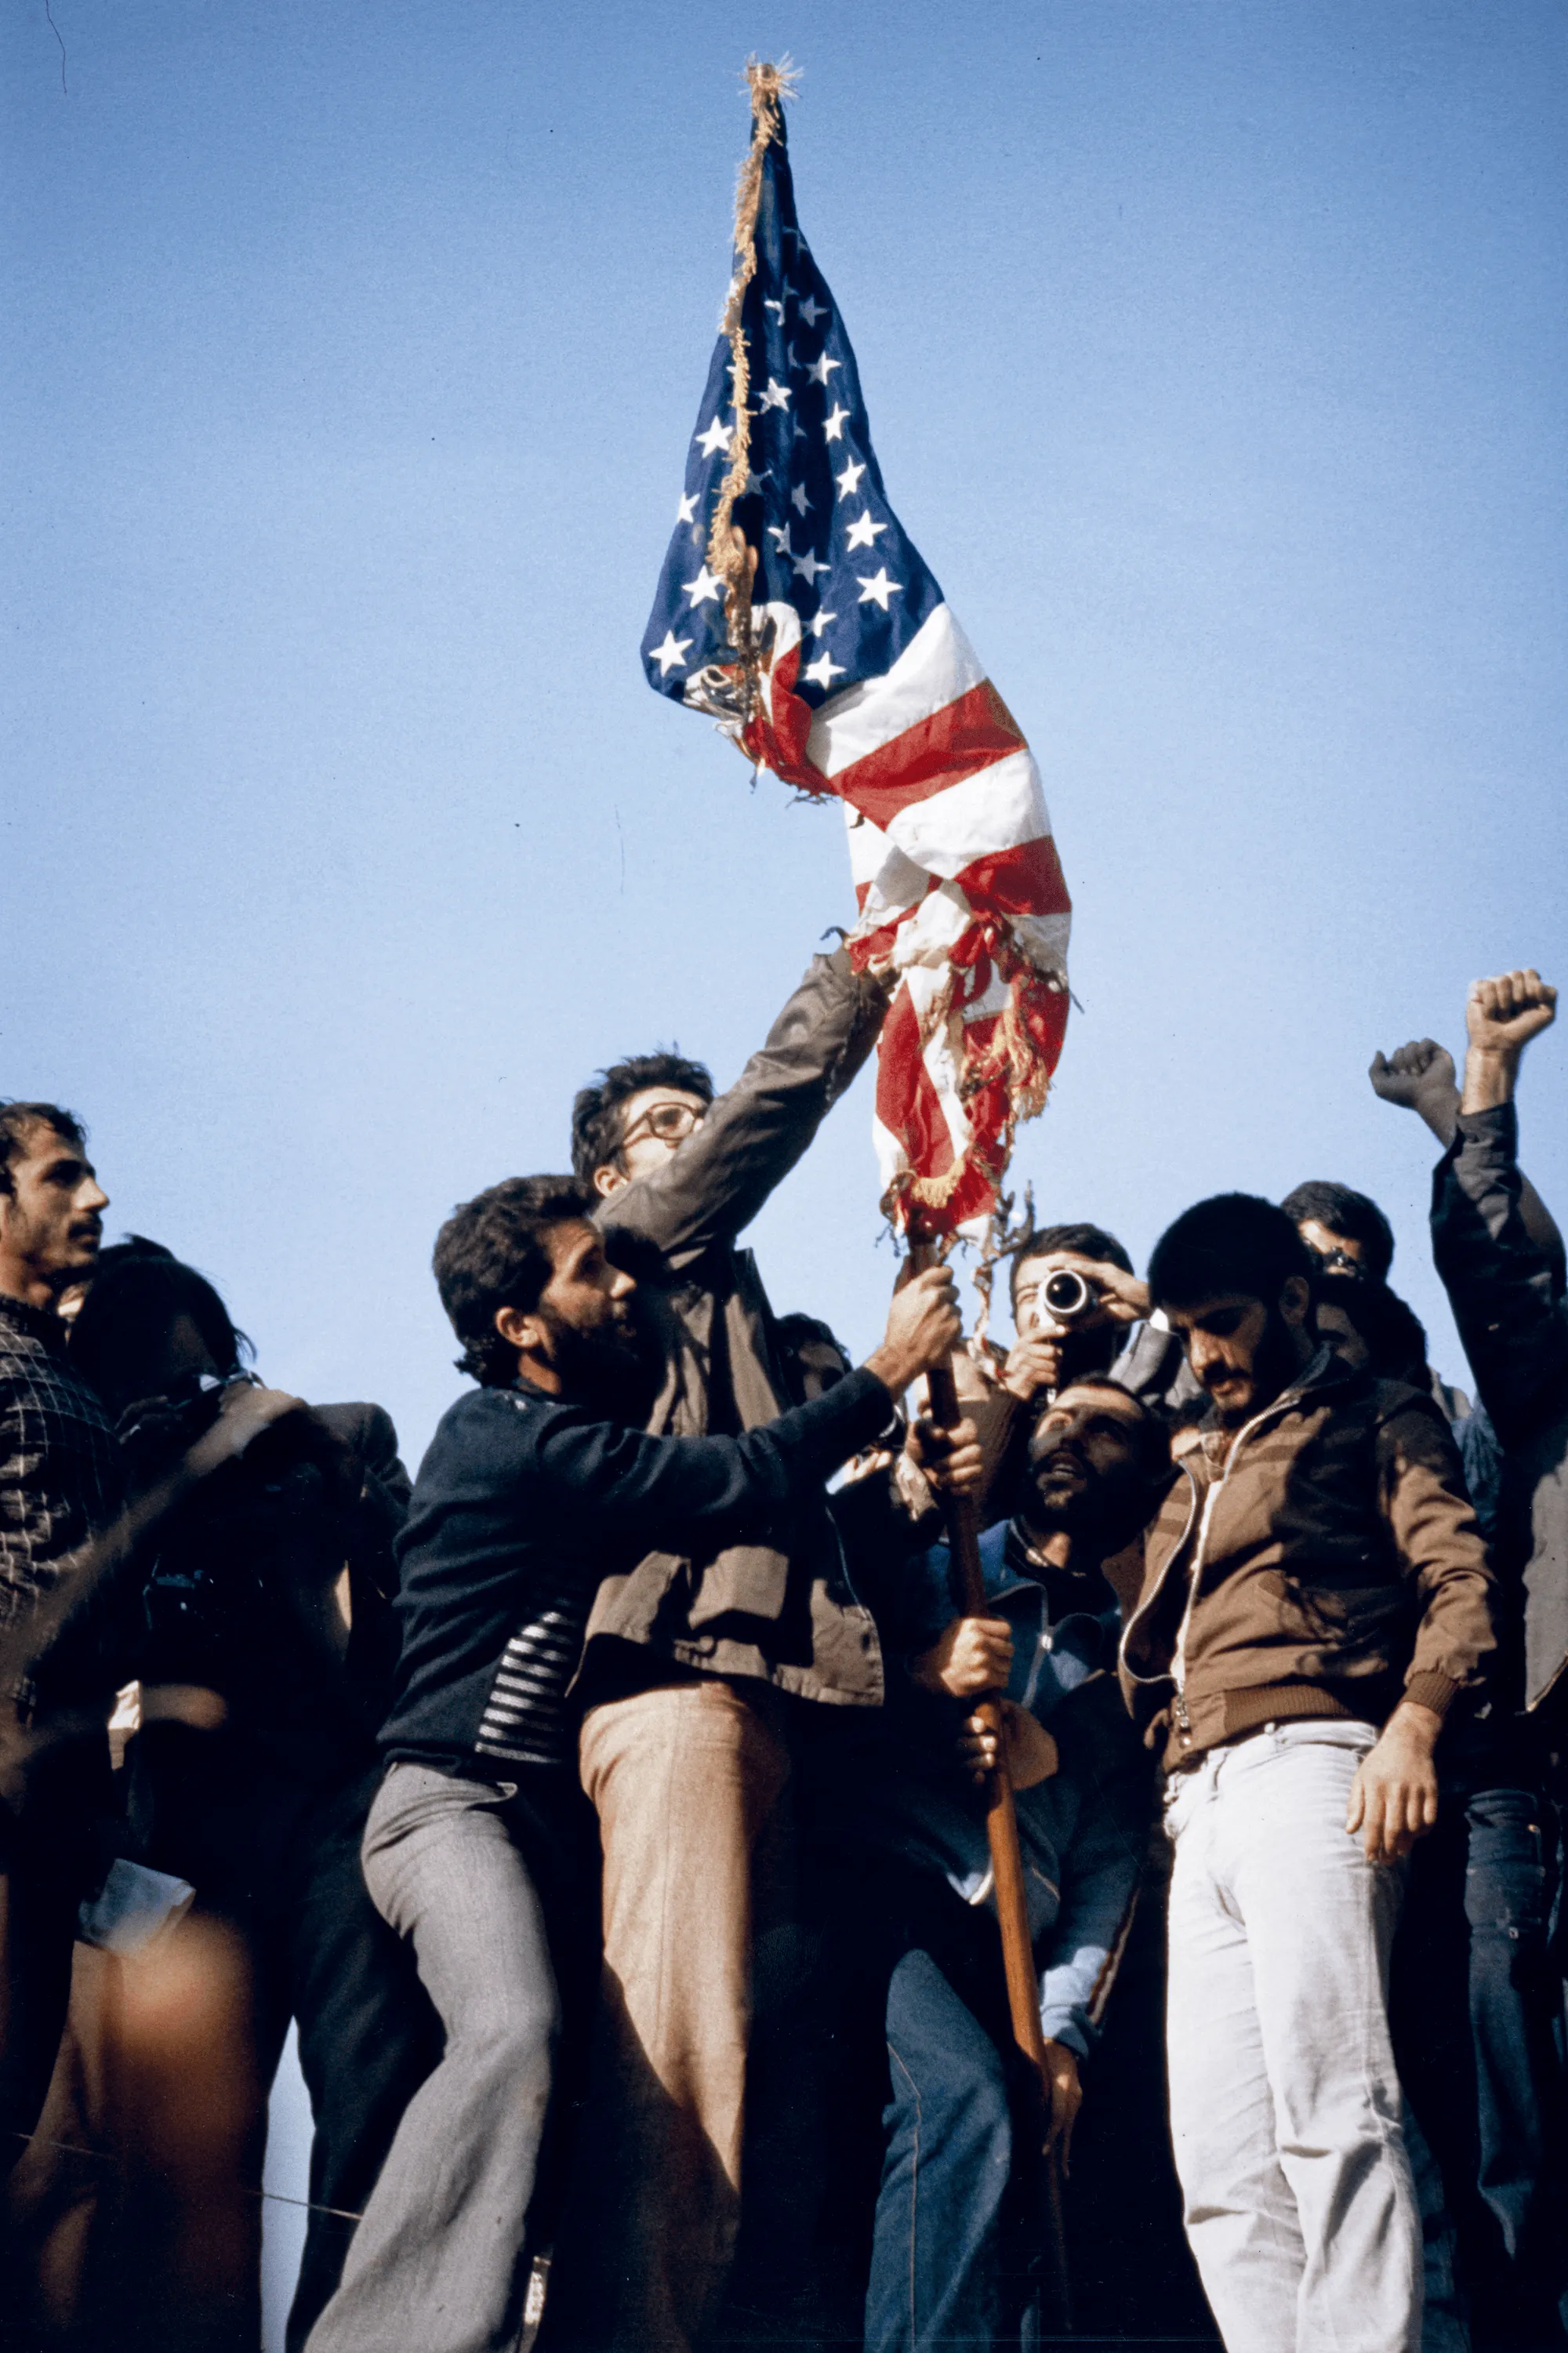 Philippe Ledru, Iraniens brûlant le drapeau américain à Téhéran, 8 novembre 1979, photographie.